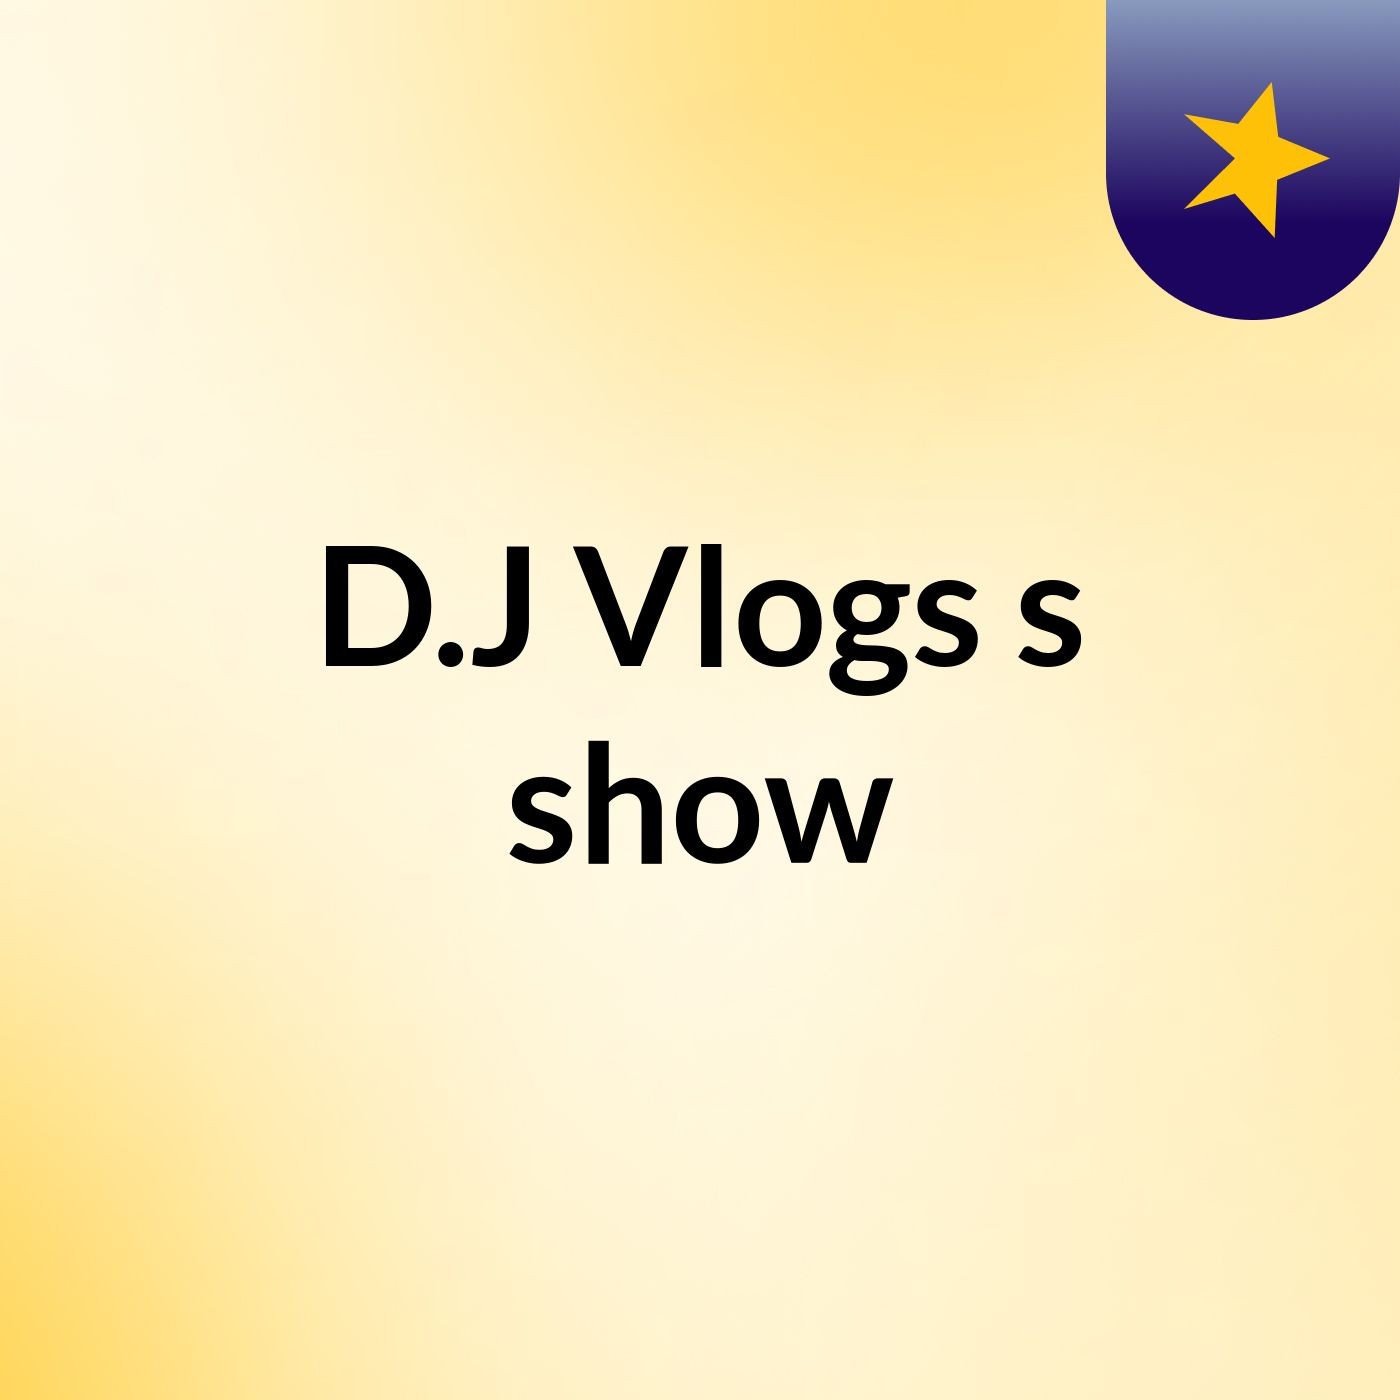 D.J Vlogs's show